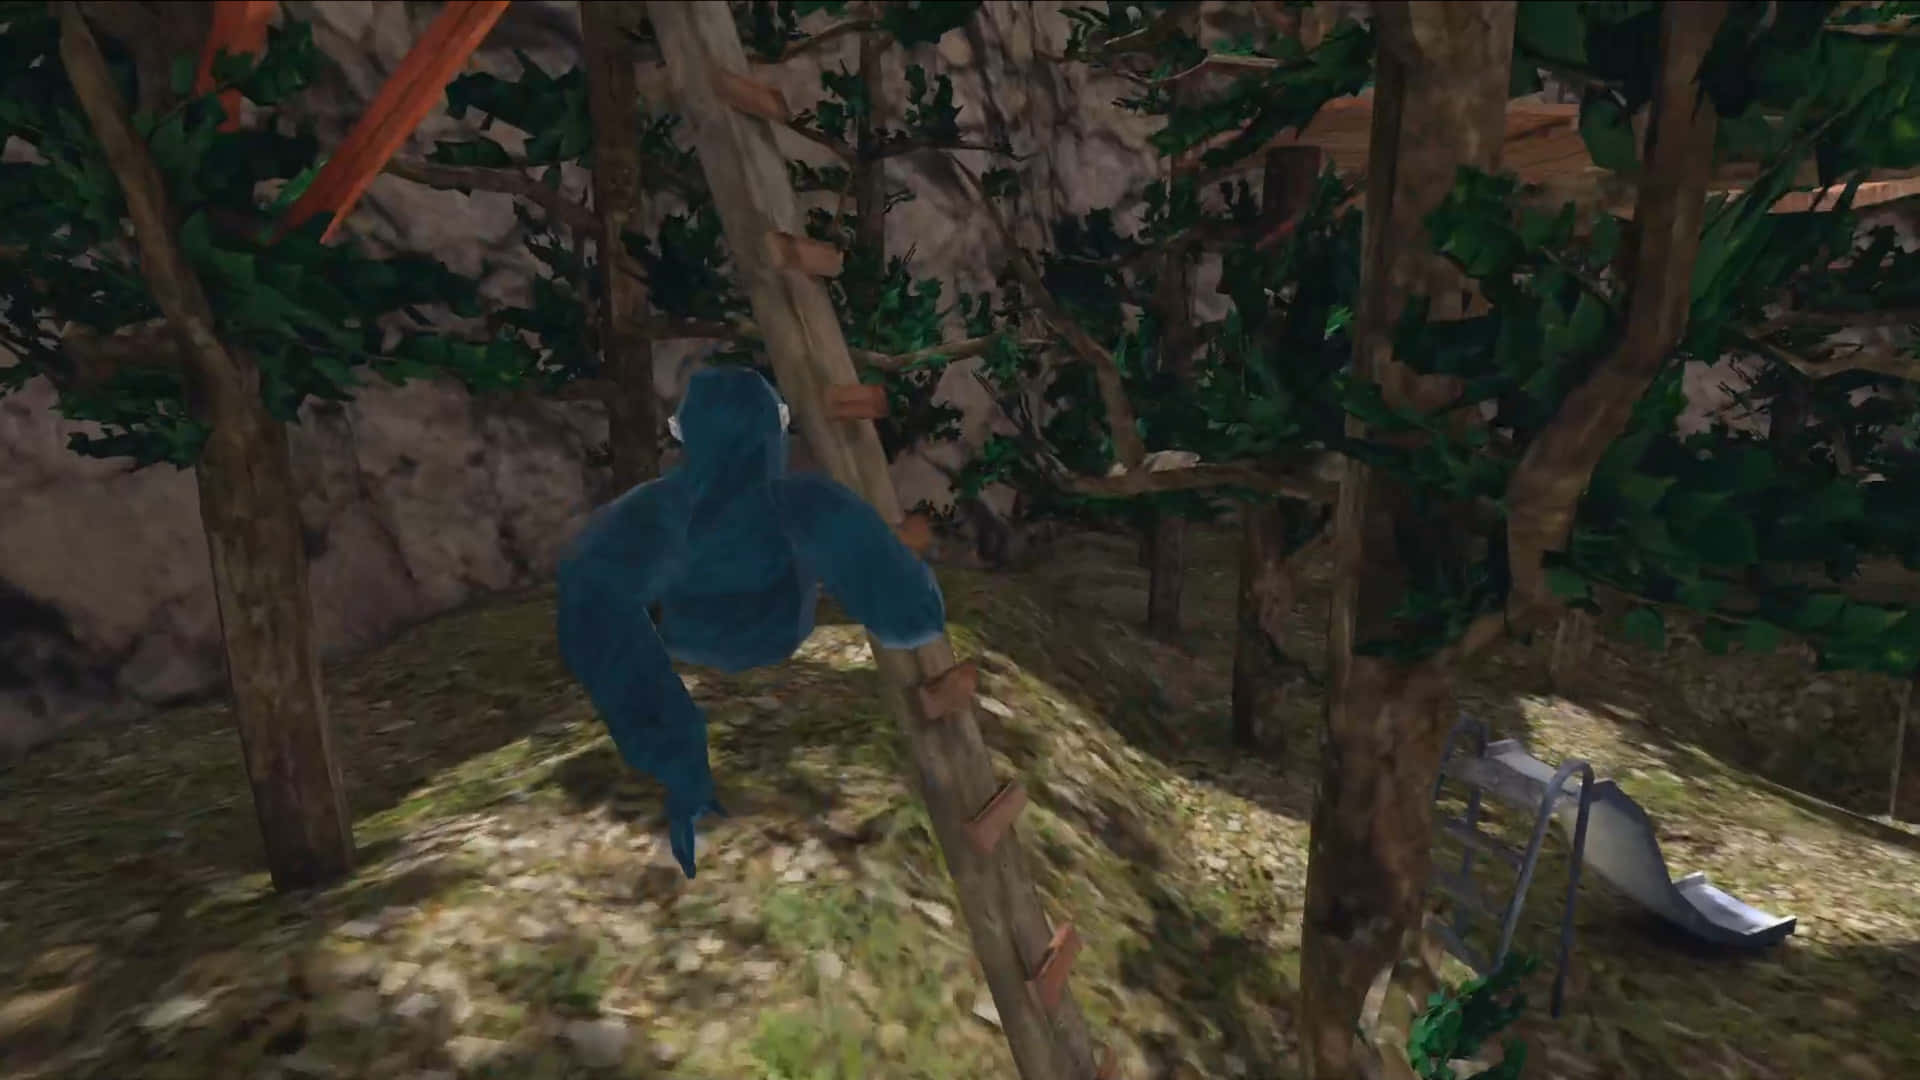 Unascimmia Blu Sta Arrampicandosi Su Un Albero In Un Videogioco. Sfondo